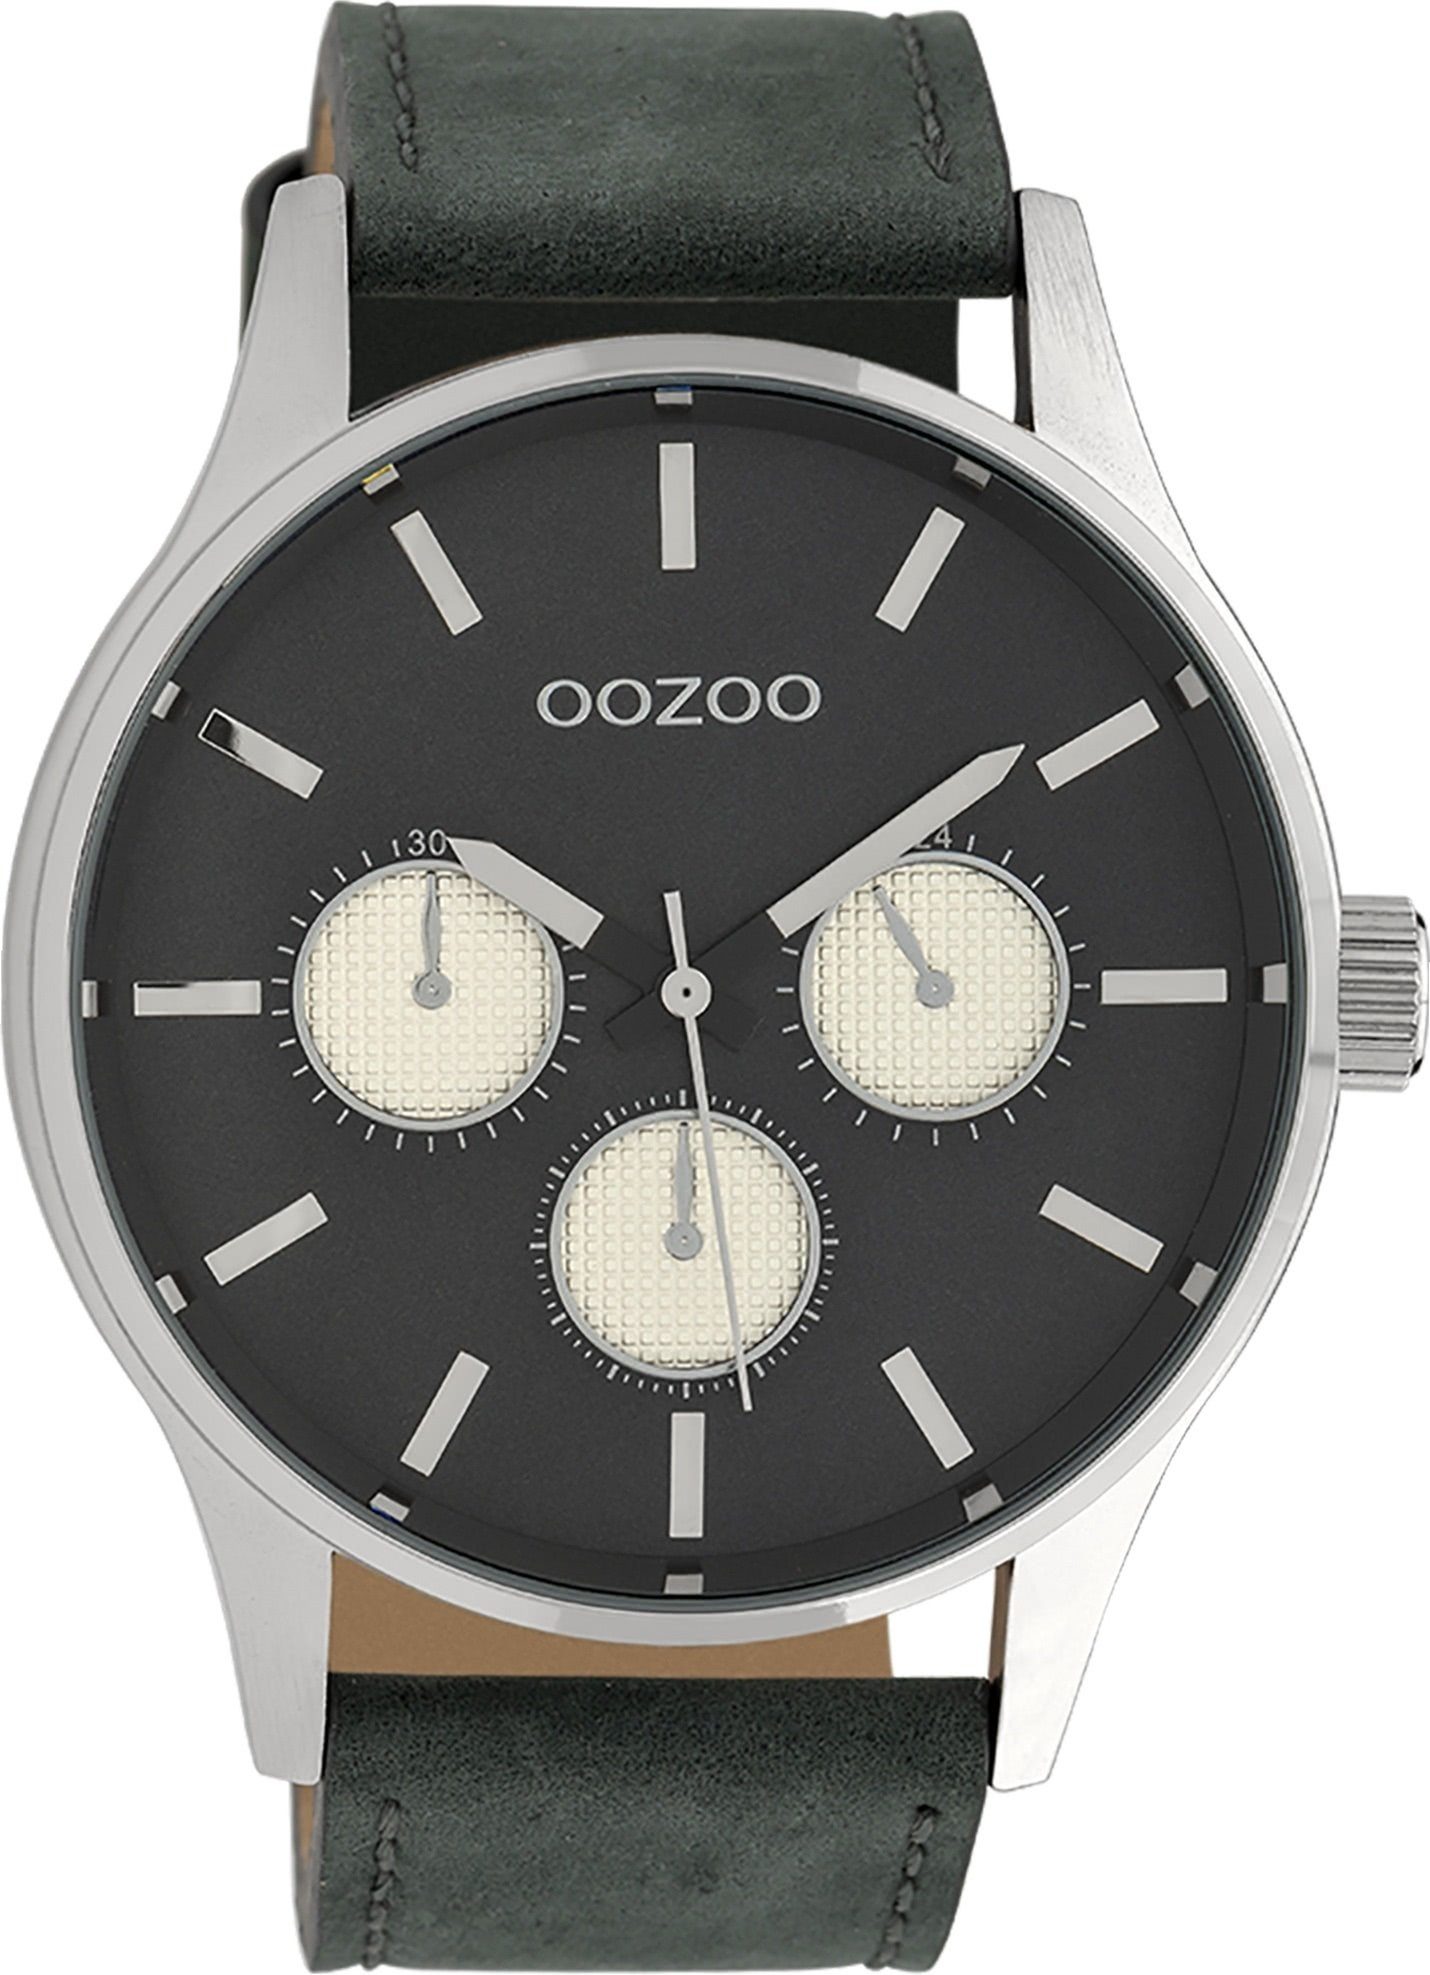 Herren groß Timepieces Armbanduhr OOZOO Fashion-Style, Lederarmband, Japanisches rund, Oozoo (ca. Herrenuhr Quarzuhr 48mm) extra Laufwerk Analog,